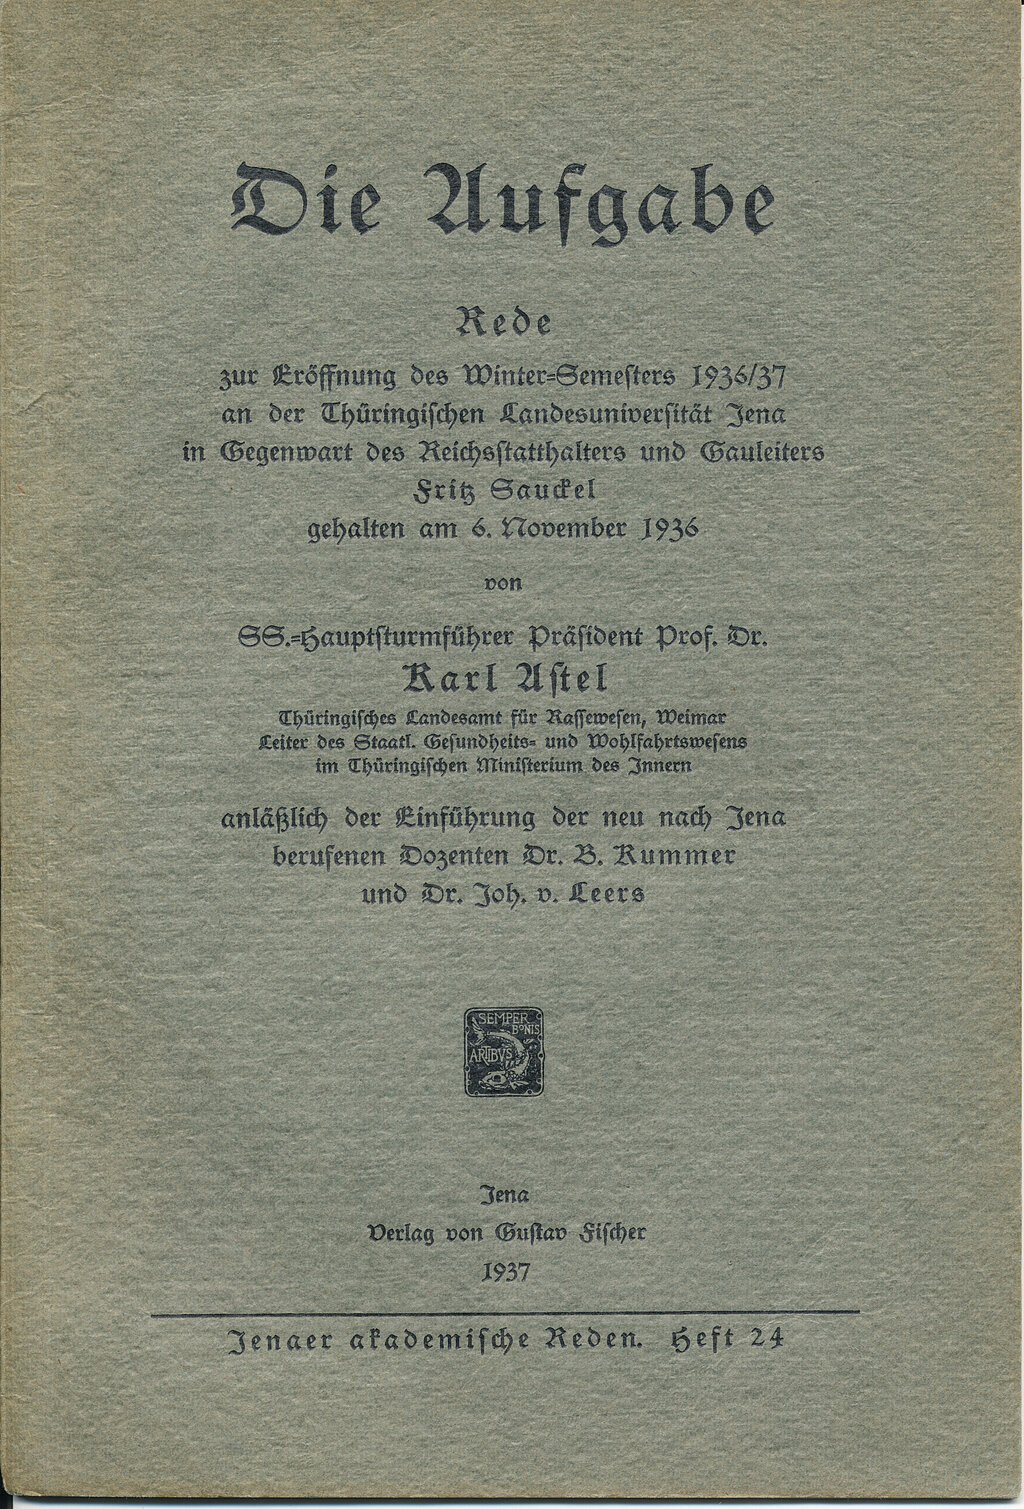 Die Eröffnungsrede Karl Astels zum Wintersemester 1936/37 an der Universität Jena wurde publiziert, zu sehen ist das Titelblatt. Überschrieben ist die Rede mit "Die Aufgabe".